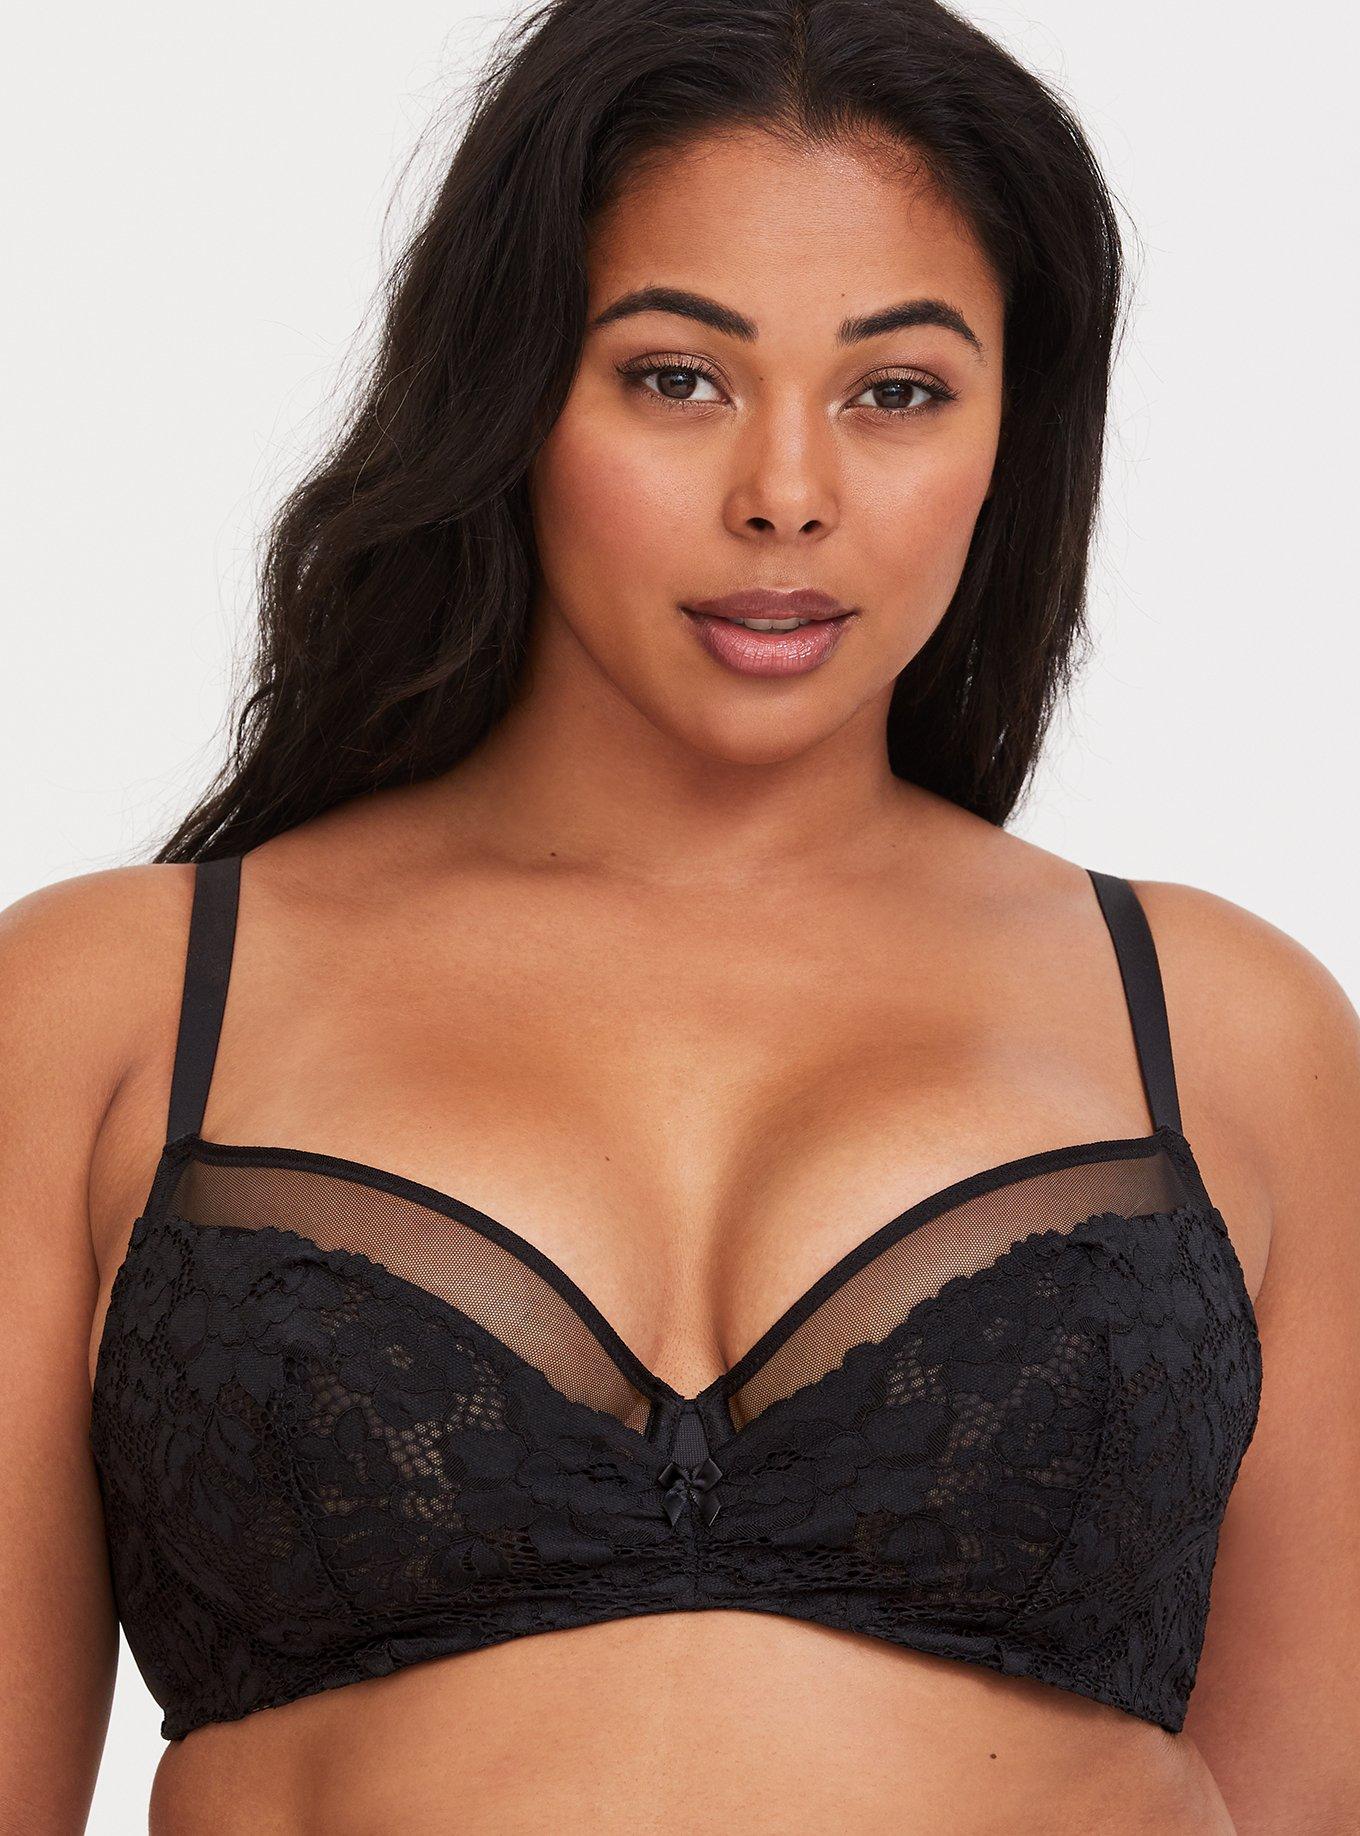 online for sale Torrid Women´s Plus Size Black Lace Push Up Demi